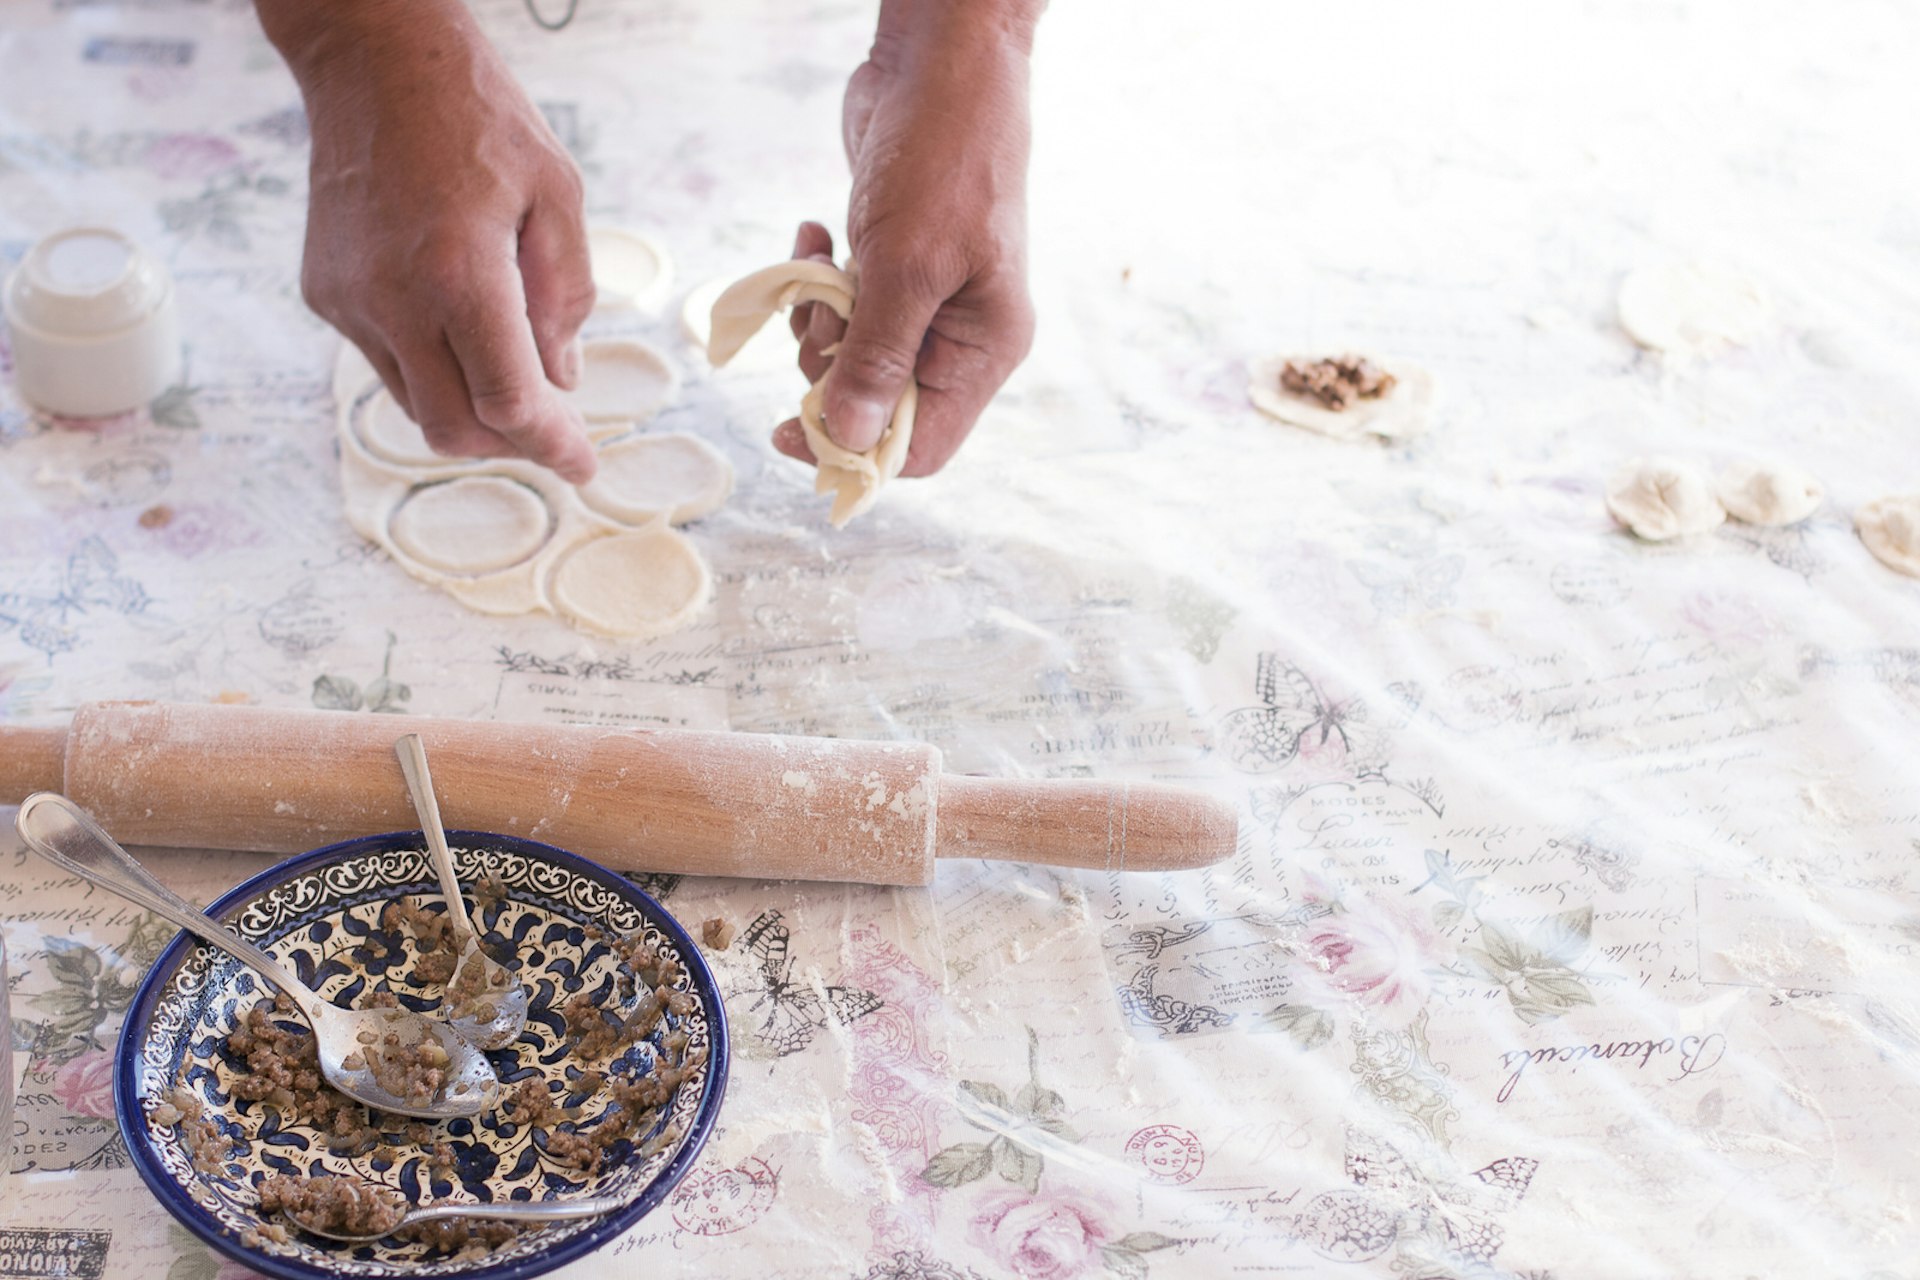 Making Jordanian food at Beit Sitti. Image by Beit Sitti